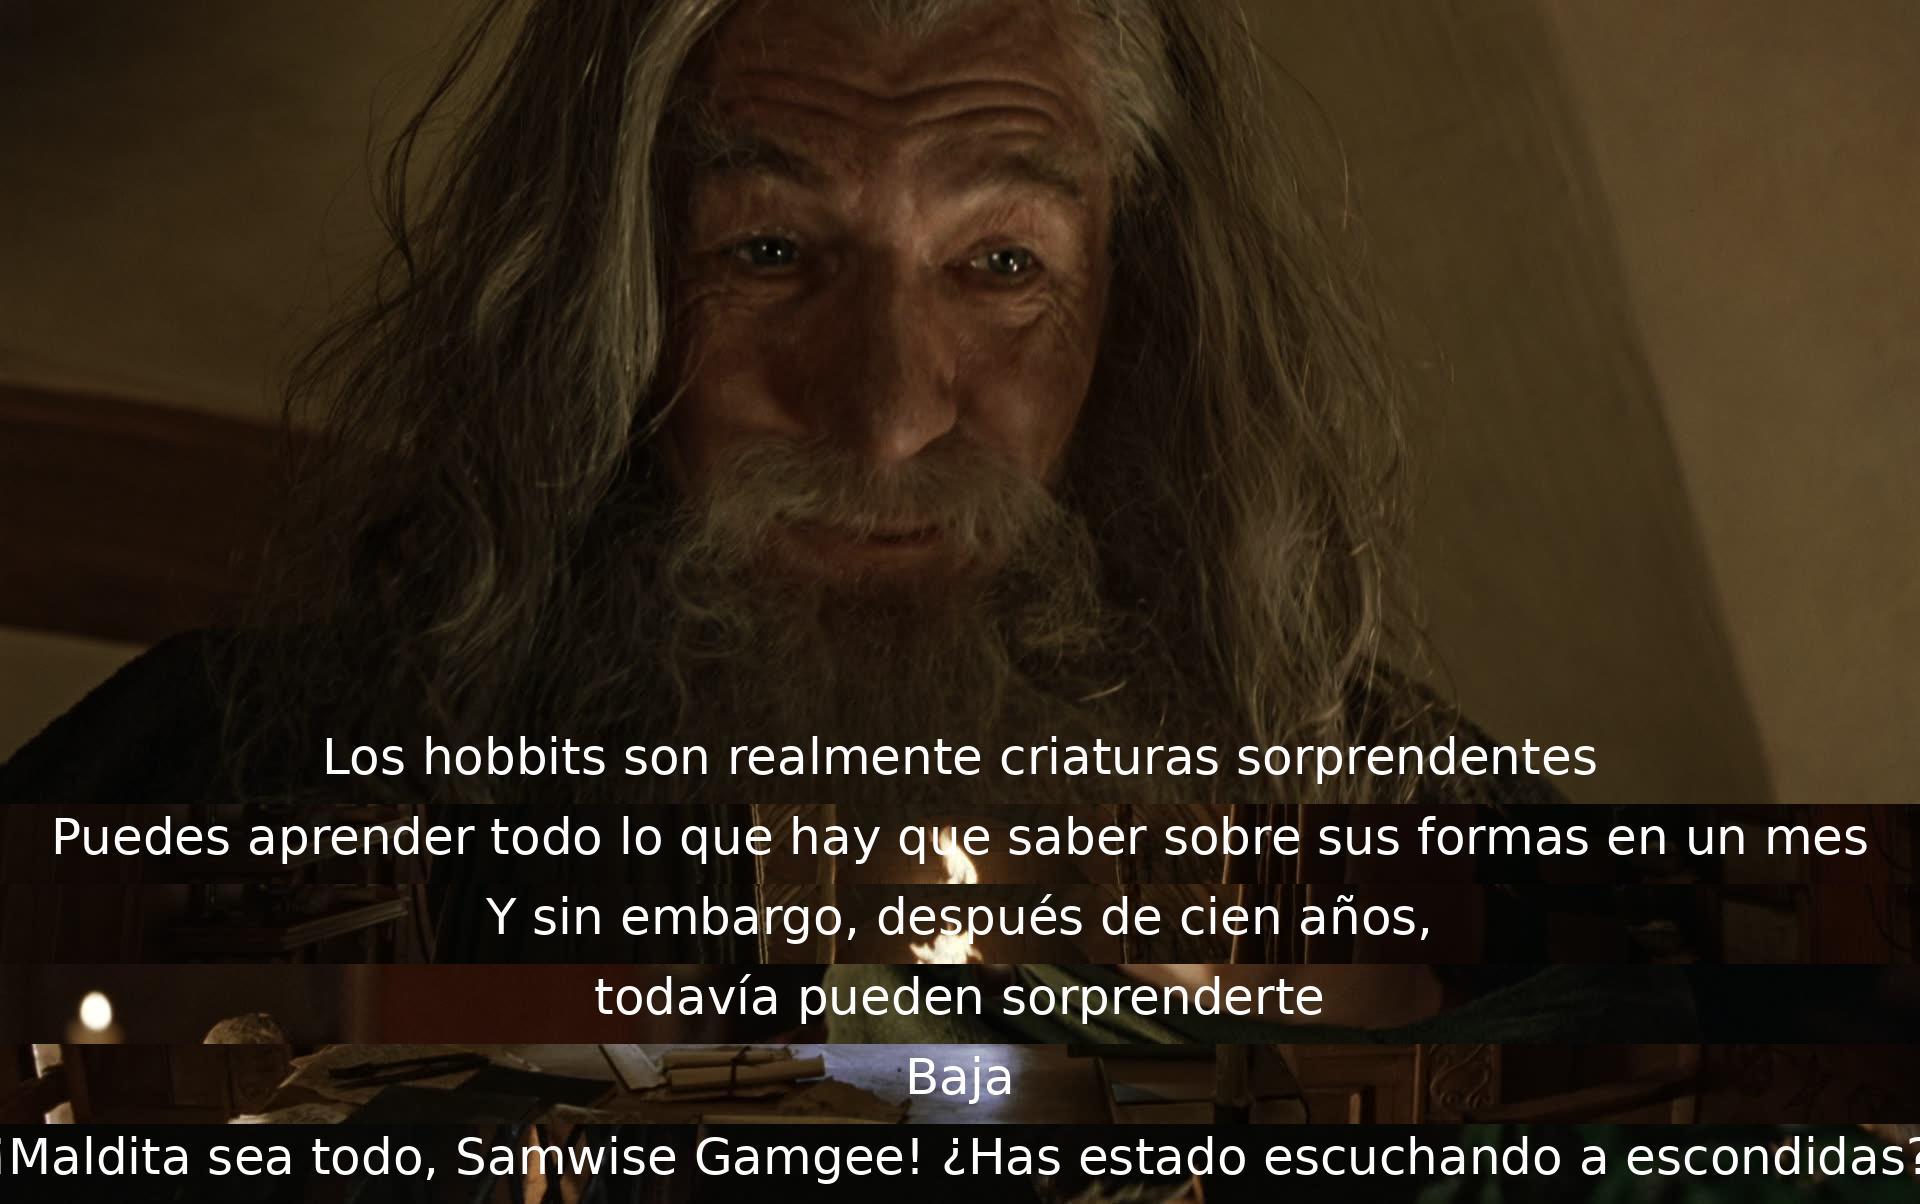 Los hobbits son sorprendentes y enigmáticos, con mucho por descubrir incluso después de años. Samwise Gamgee escucha sin permiso, causando sorpresa y frustración en la escena.